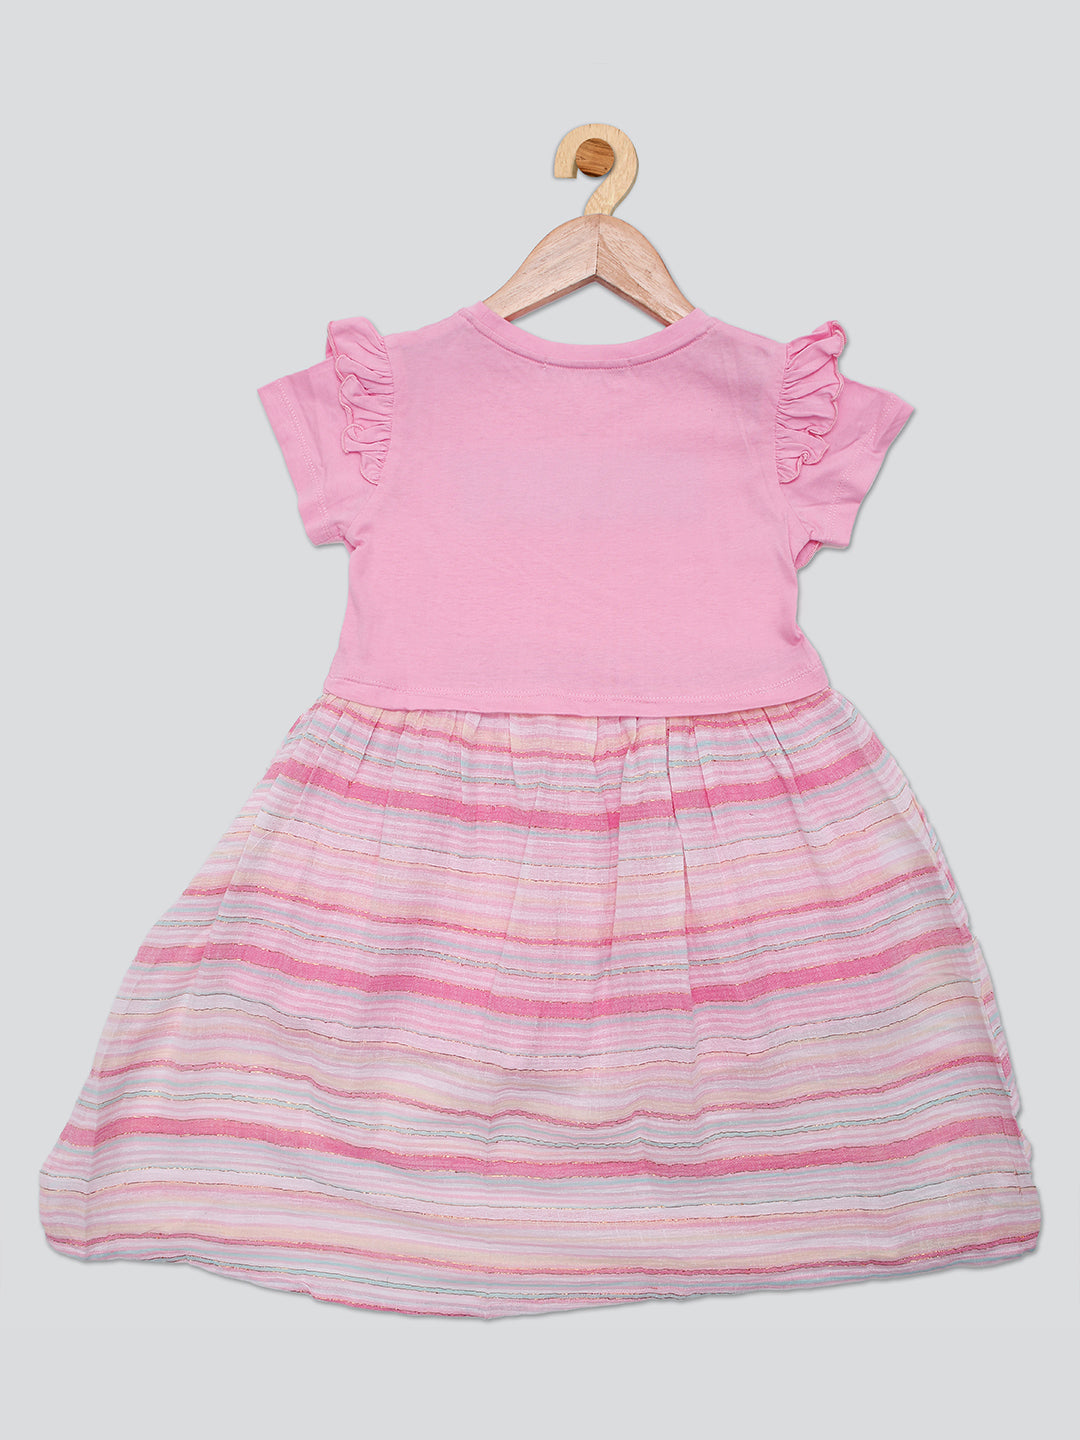 Pampolina Girls Striped  Printed Dress- Pink